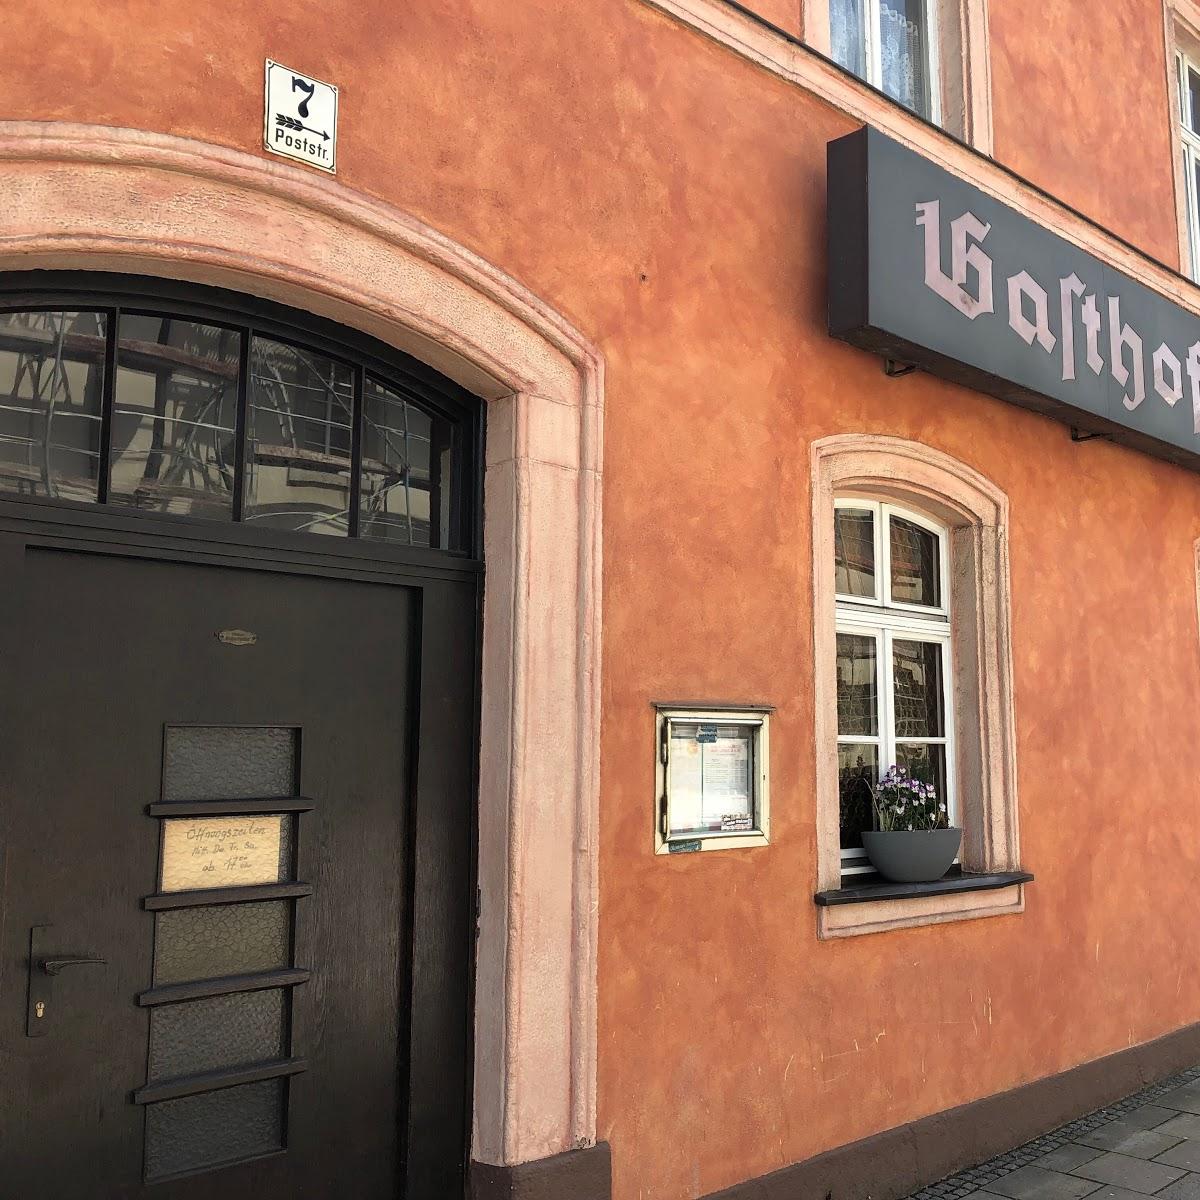 Restaurant "Gasthof Alter Bahnhof" in Hof